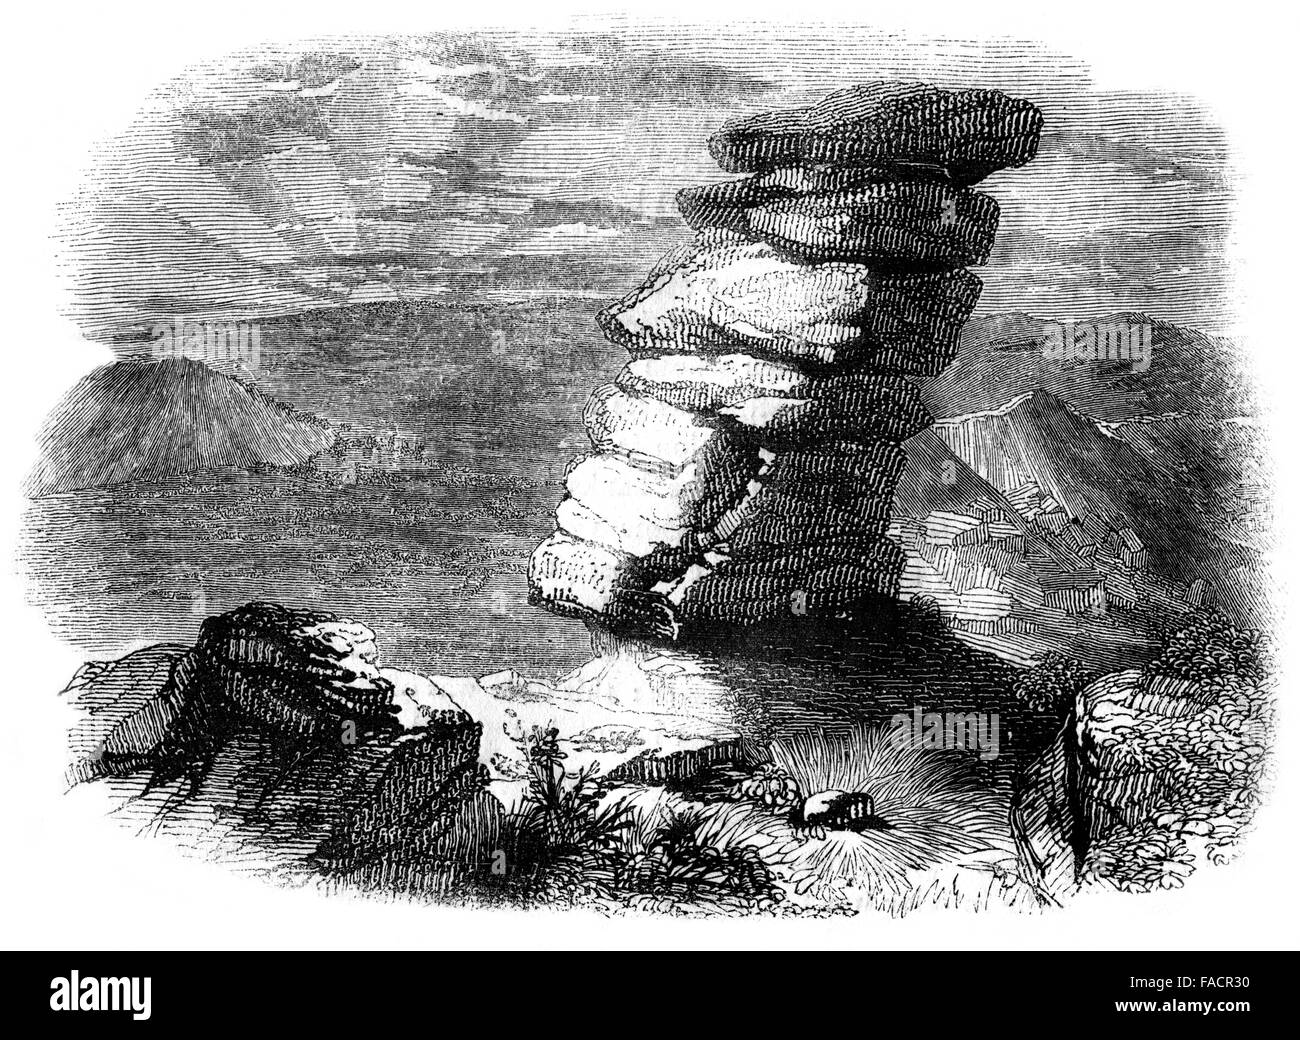 Illustration gravée de Kilmarth Rocks, Cornwall, UK à partir de 1844 Banque D'Images